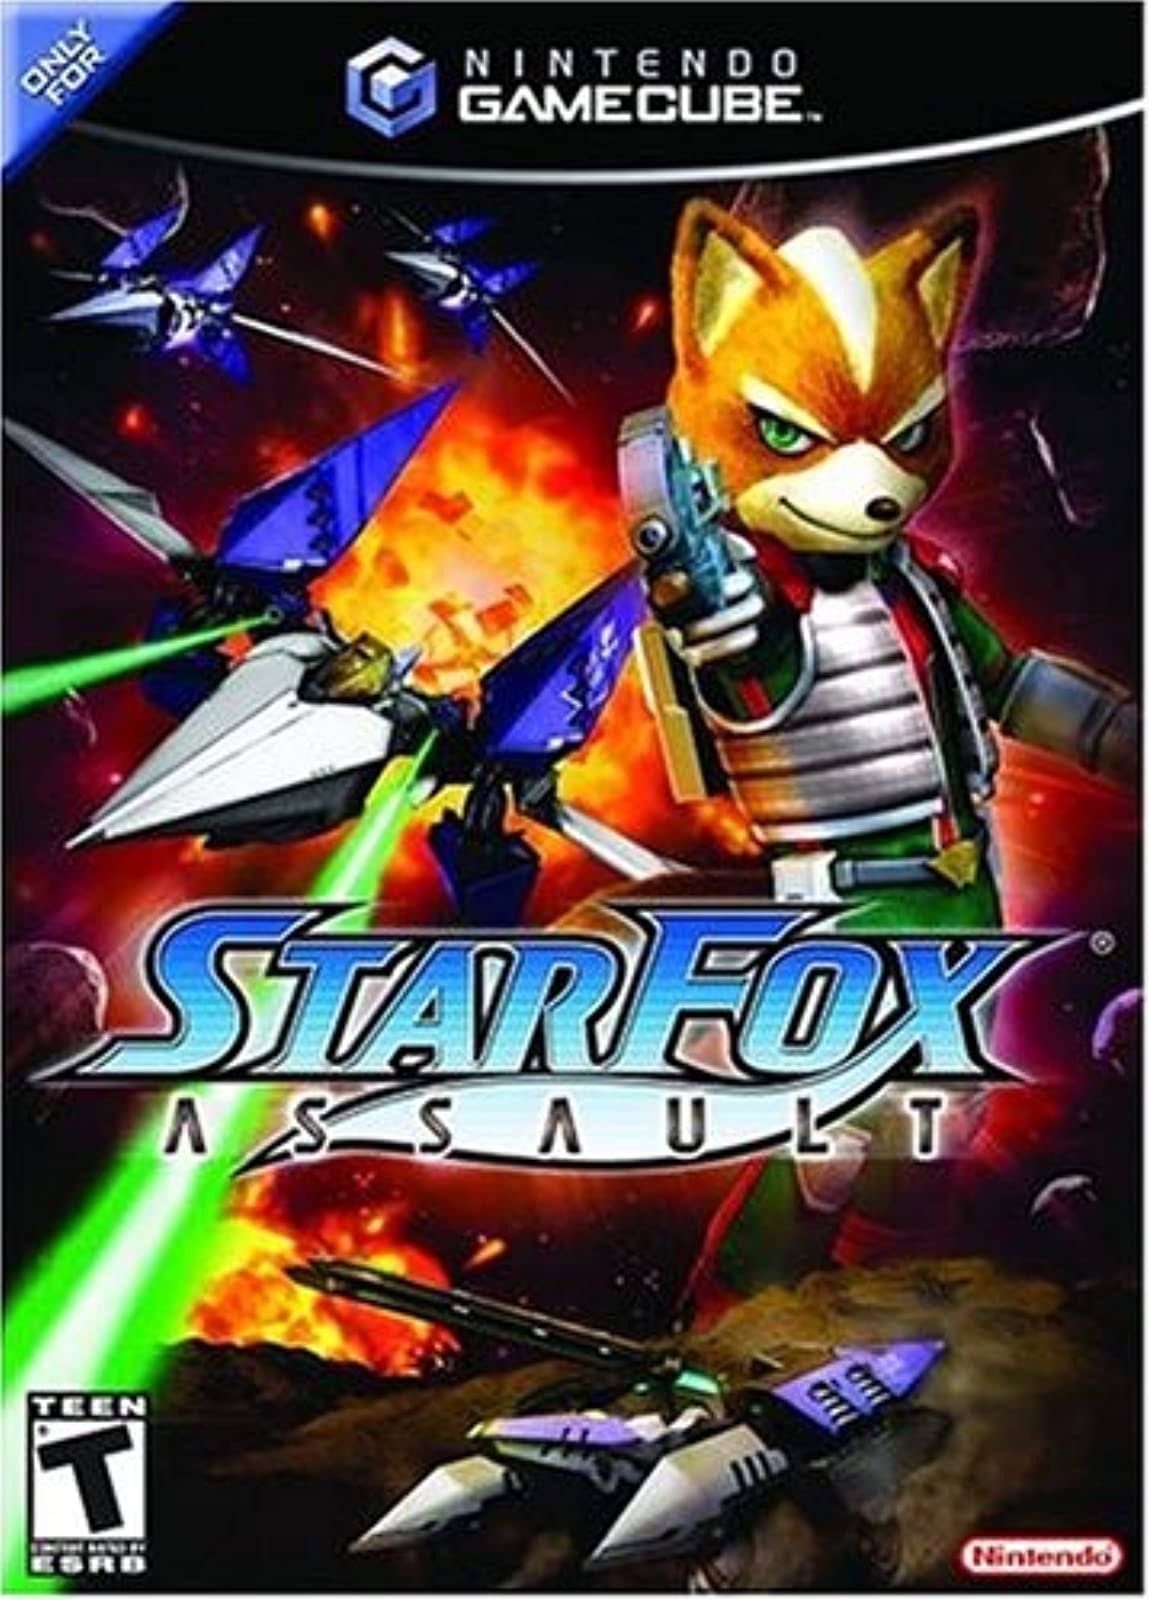 Star Fox: Assault - Nintendo GameCube